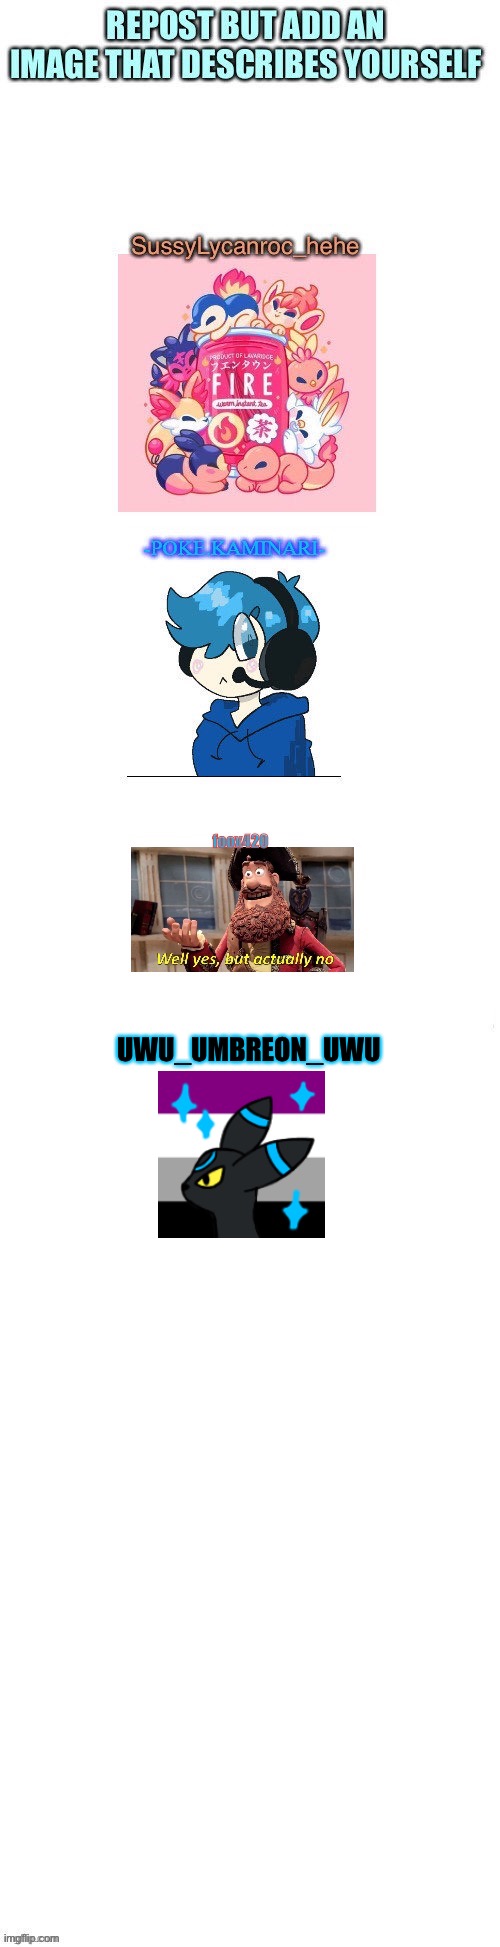 UWU_UMBREON_UWU | made w/ Imgflip meme maker